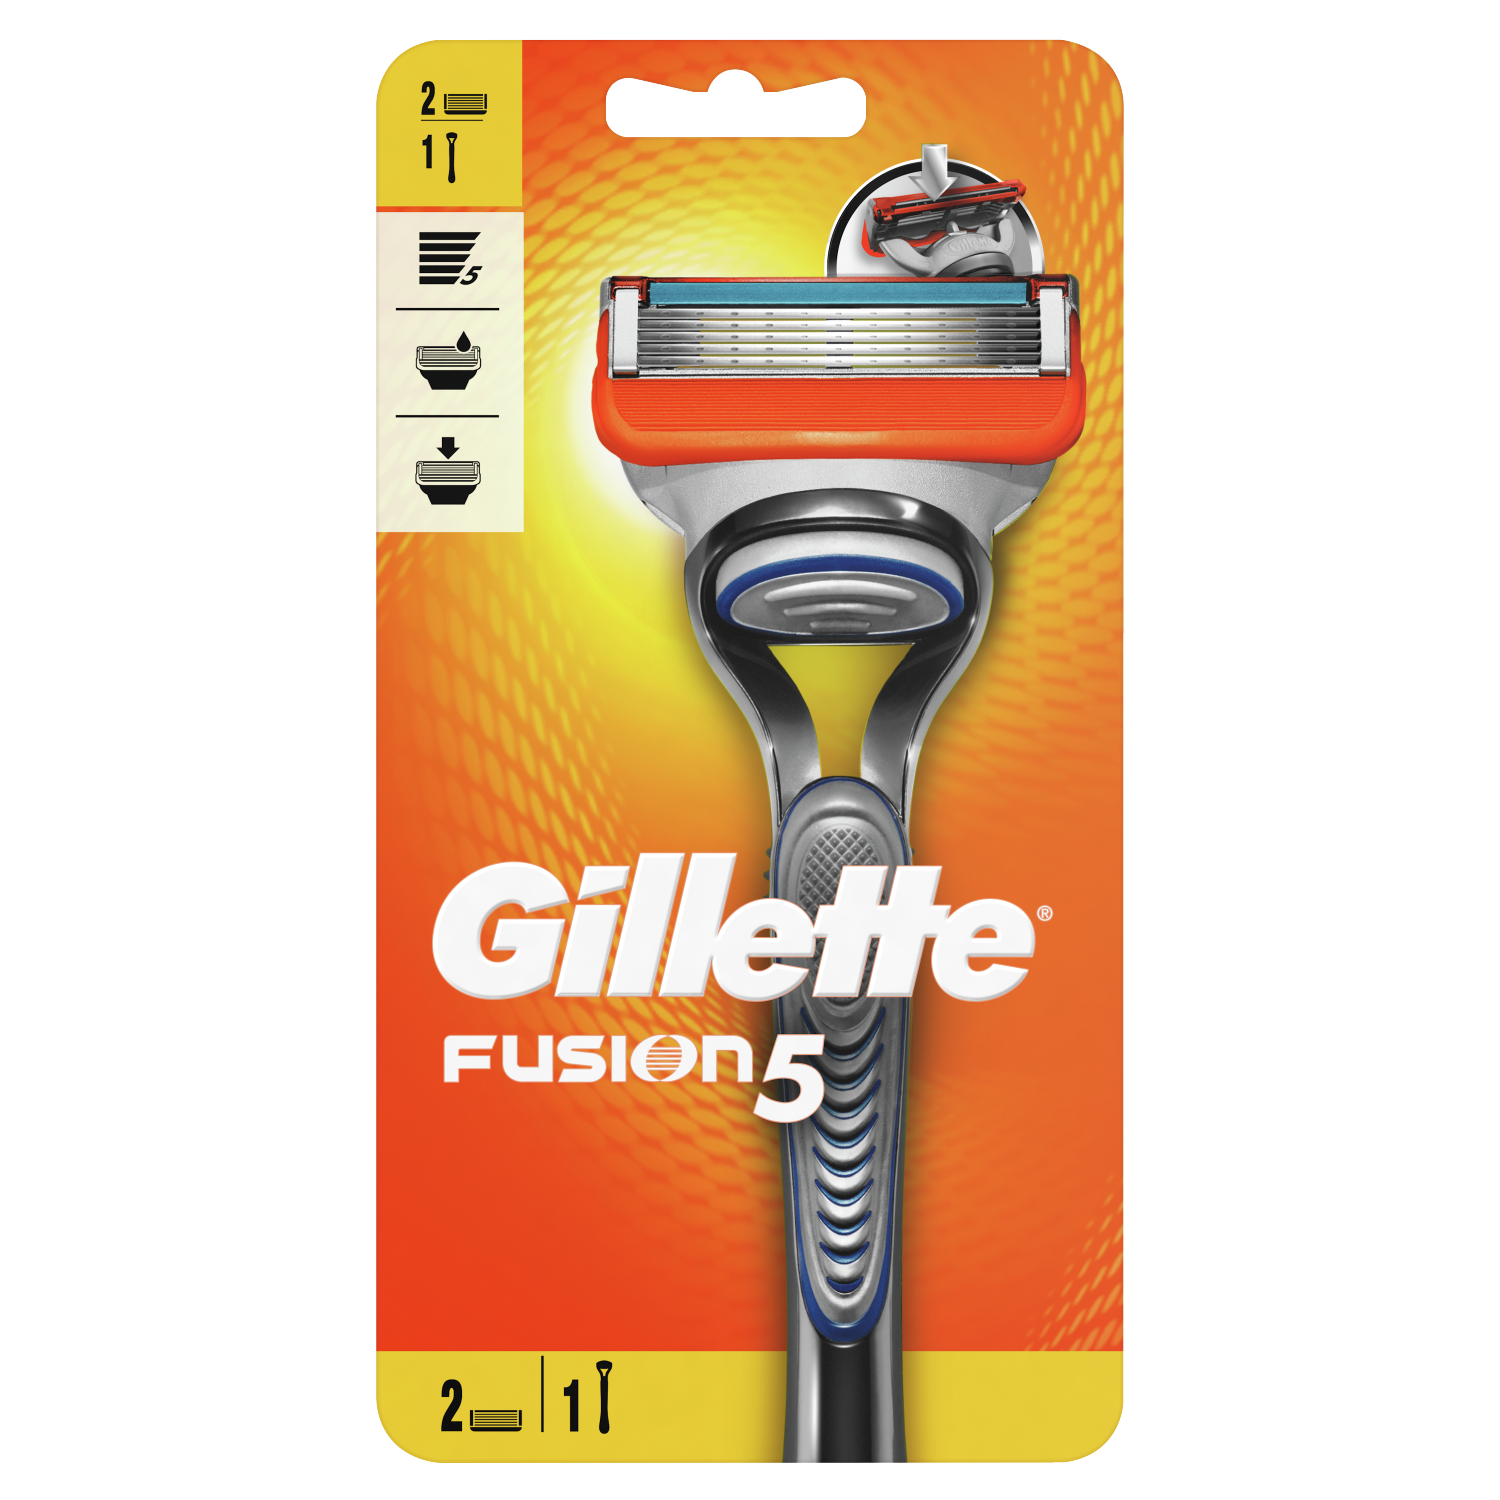 Gillette Fusion5 maszynka do golenia, 1 szt. + wkład 2 szt./1 opak. |  hebe.pl